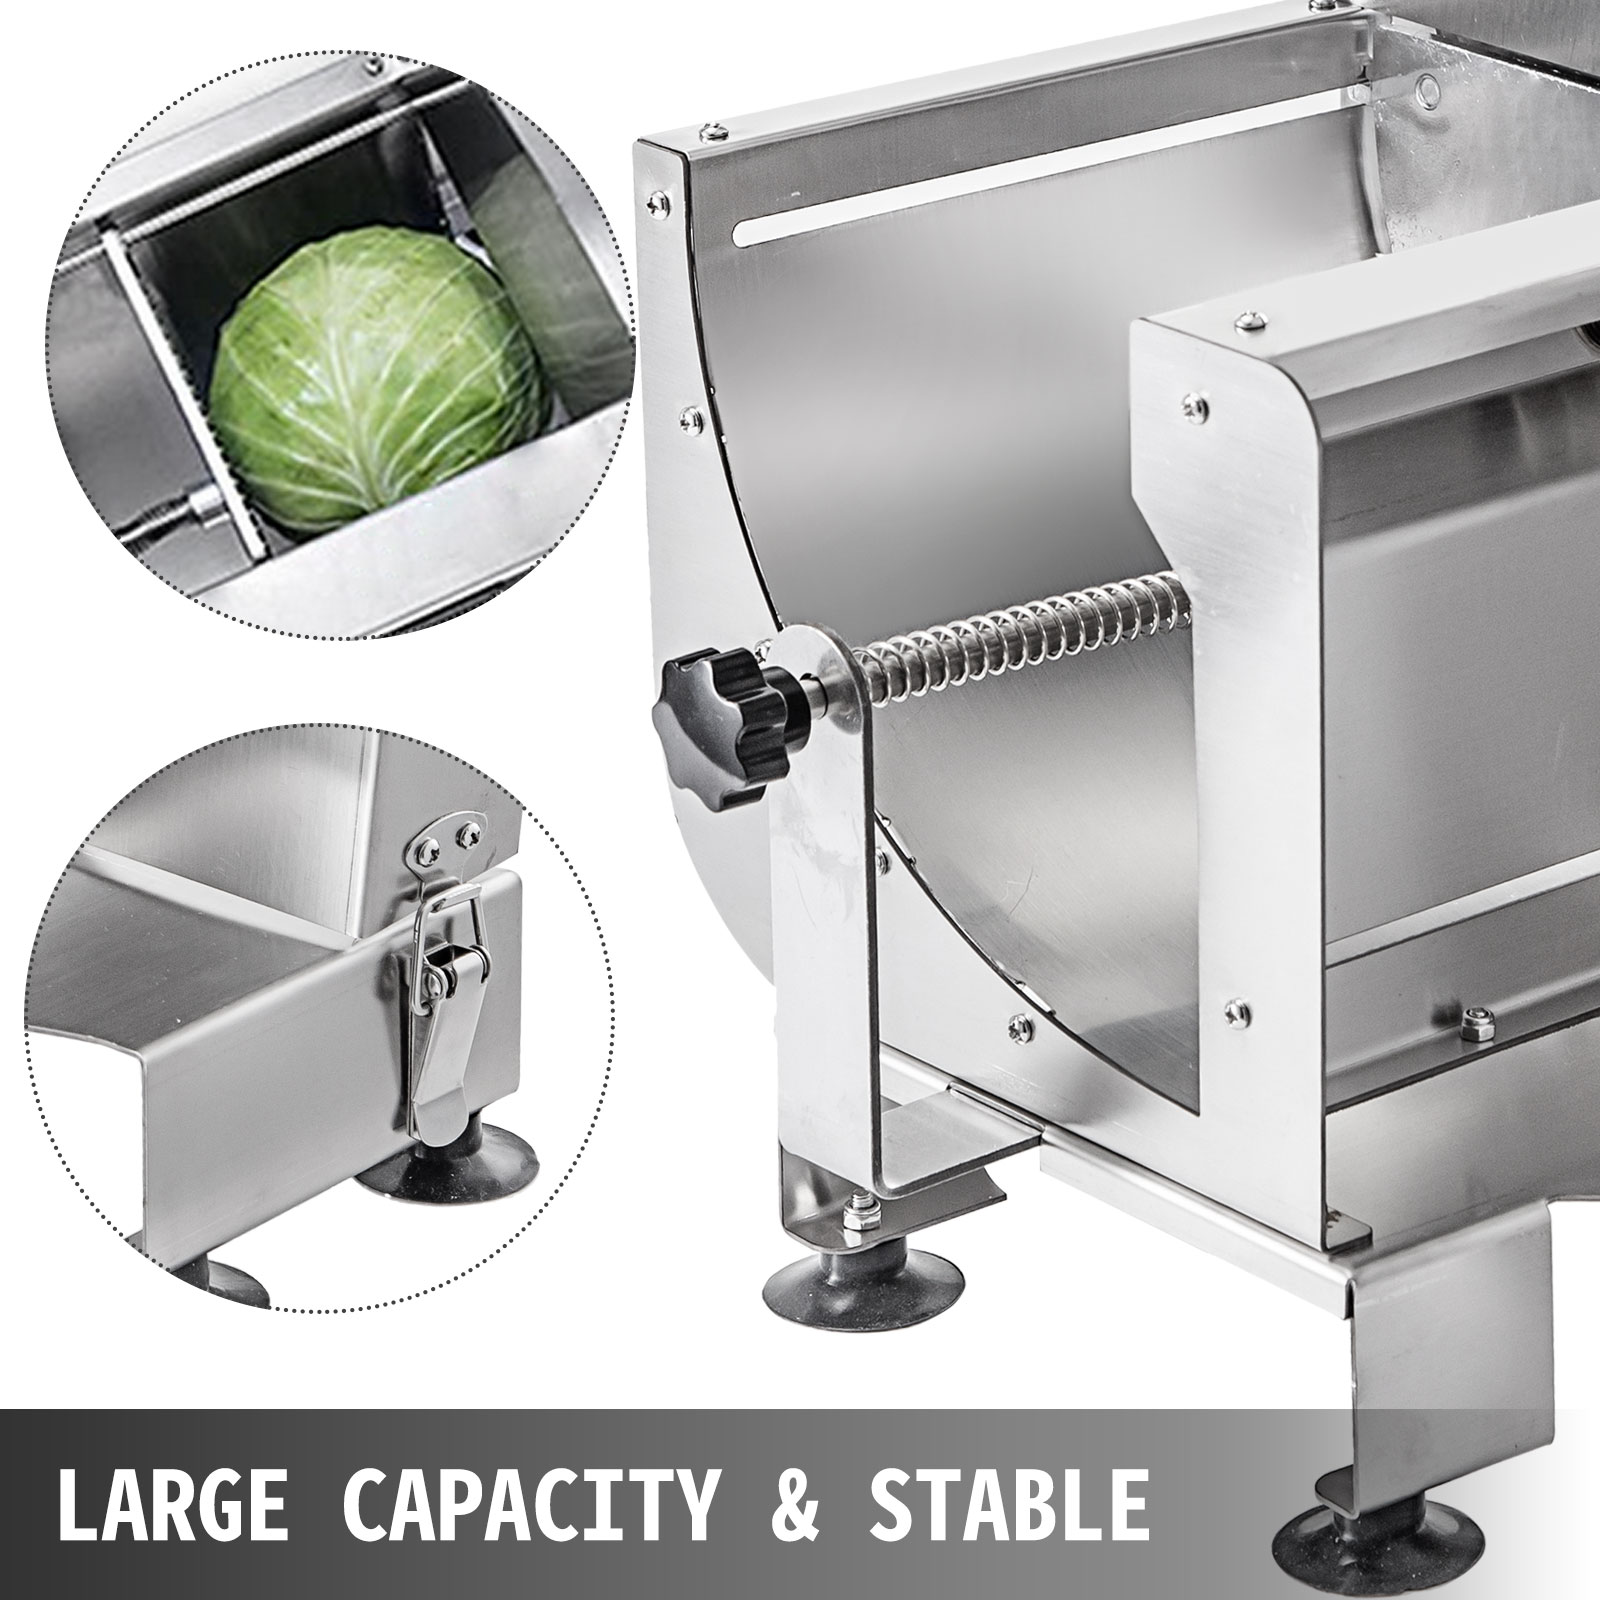 Miumaeov Electric Vegetable Slicer Commercial Fruit Slicer Machine